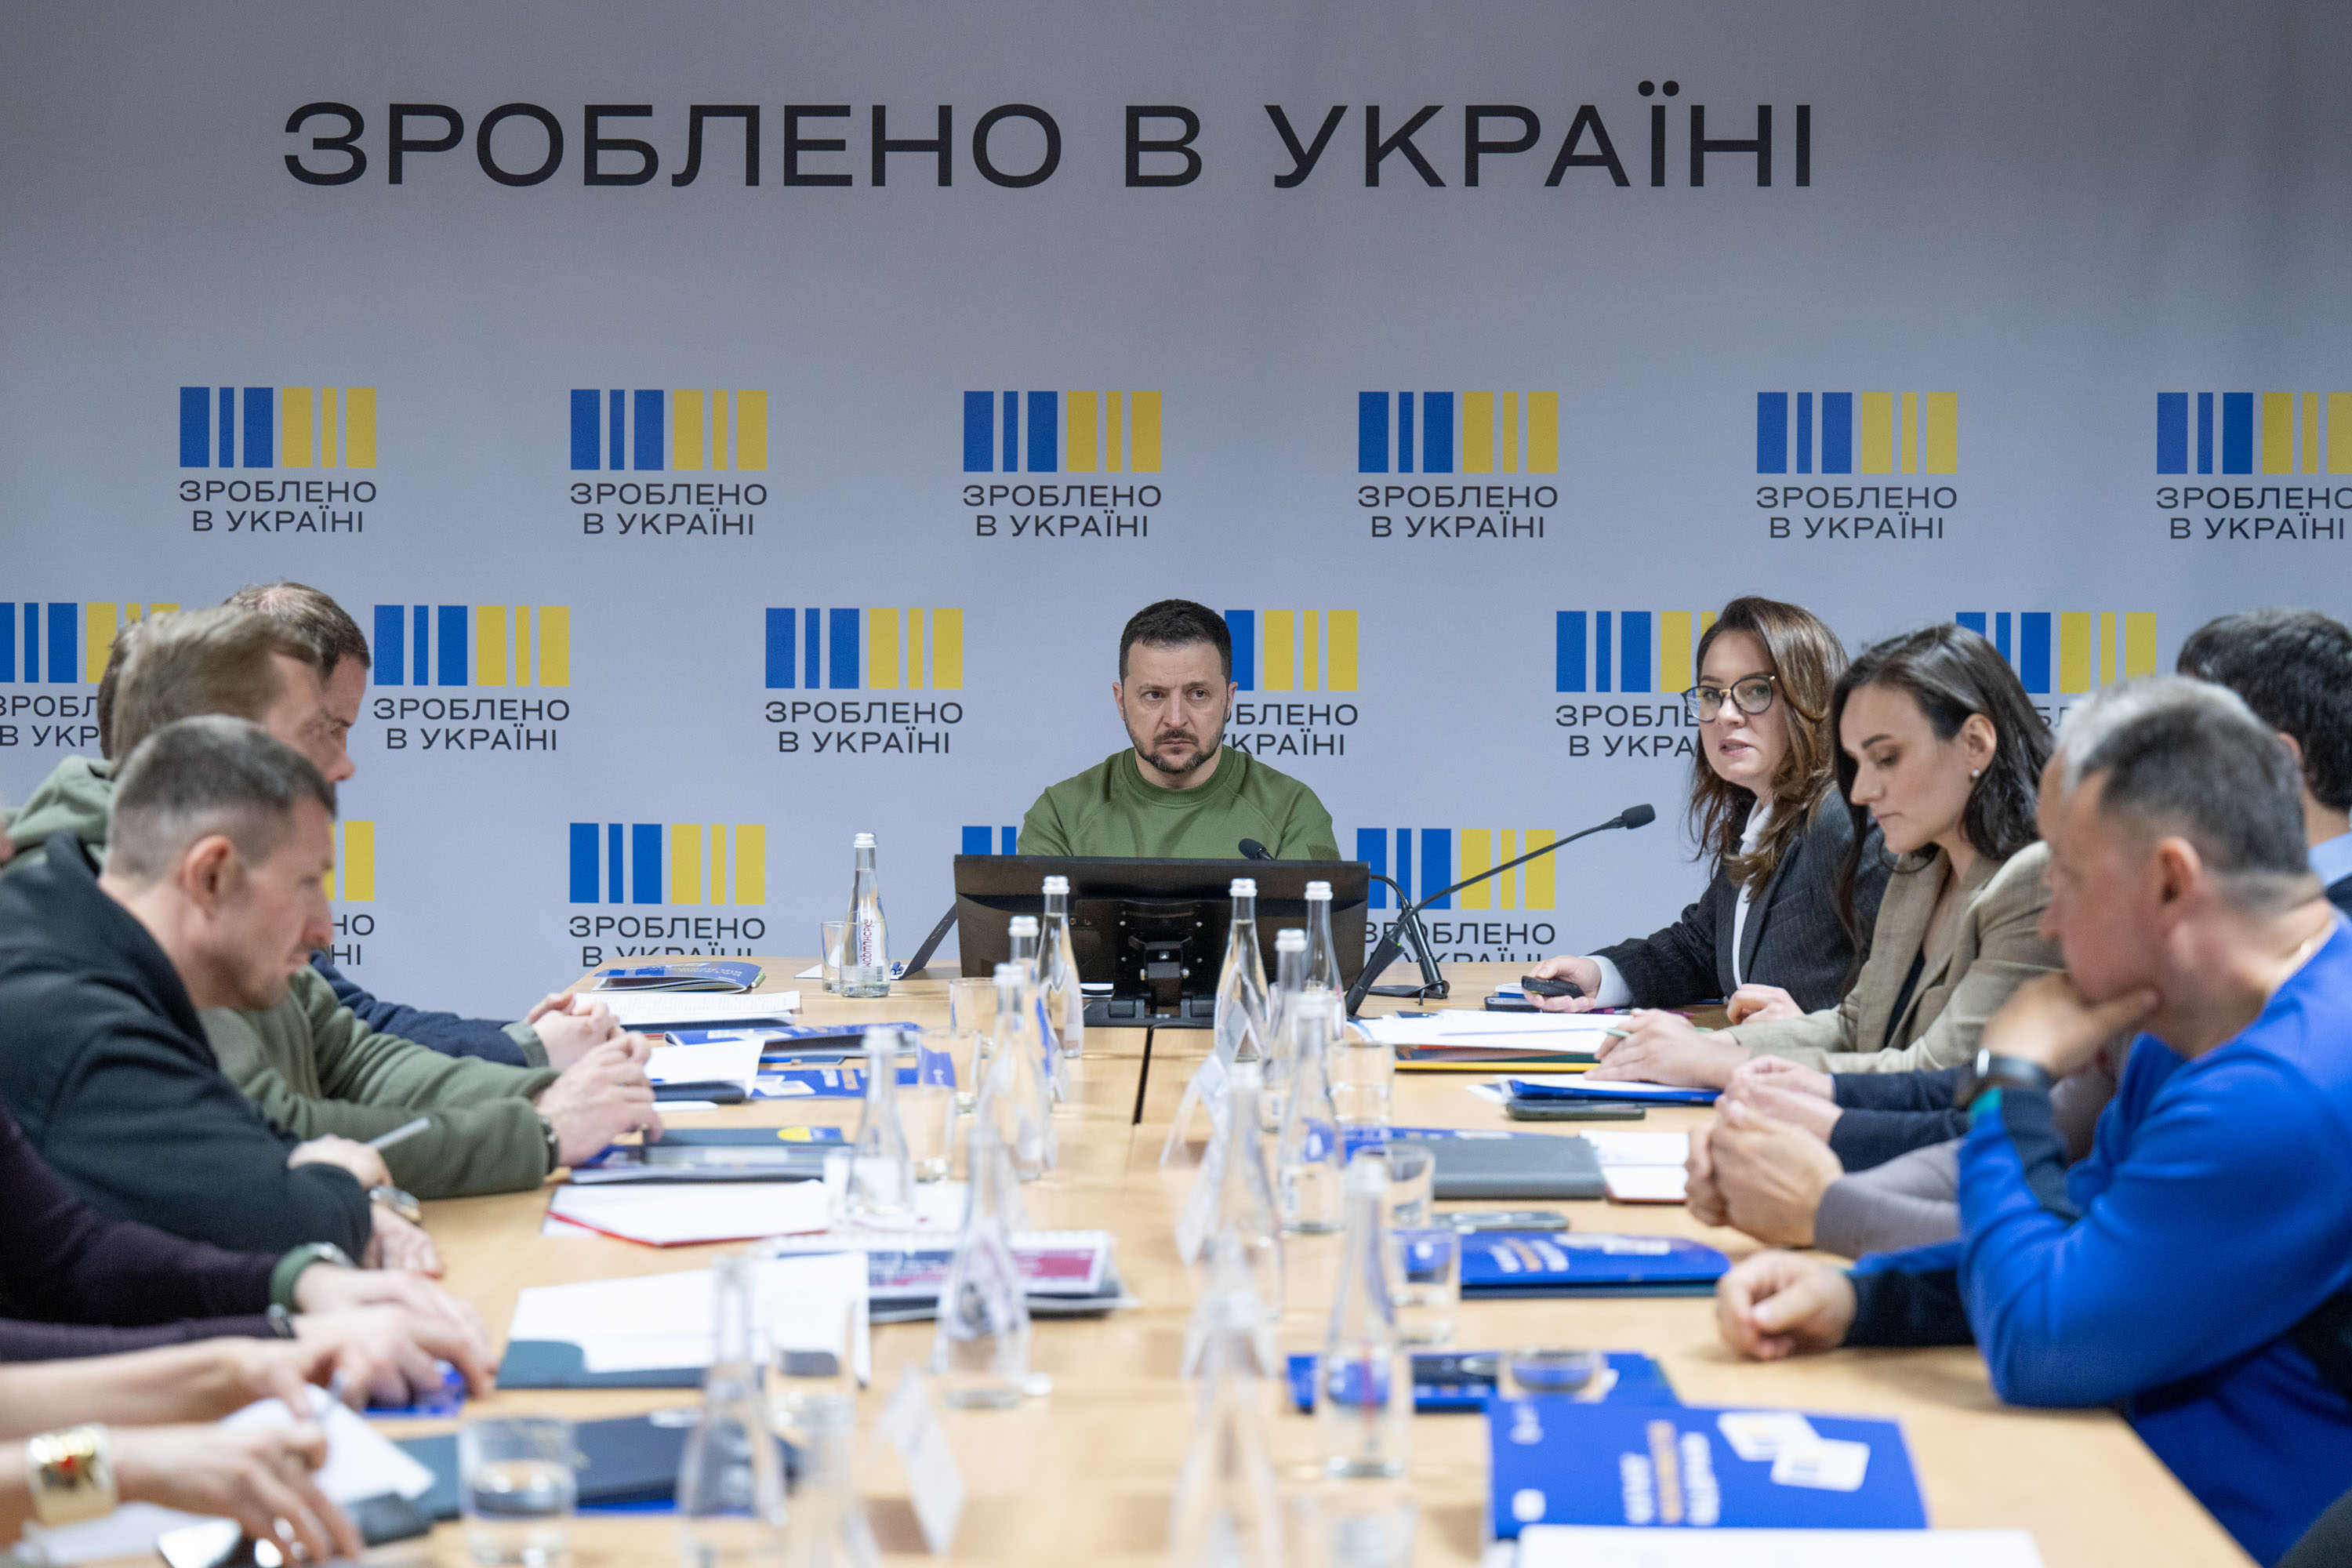  Зеленський взяв участь у презентації проекту "Зроблено в Україні" в Чернігові. 5 квітня 2024 року